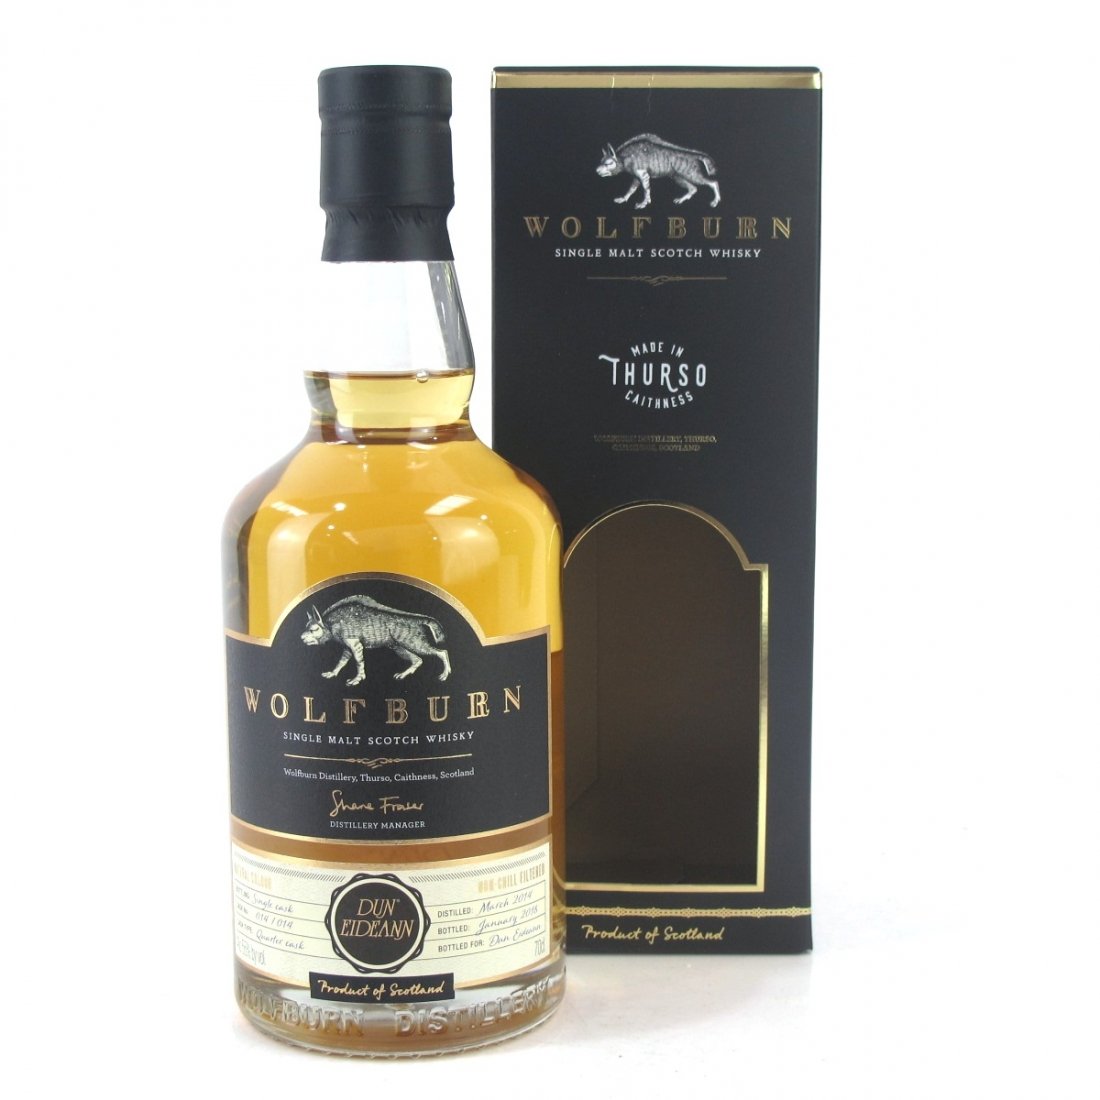 Wolfburn DUN EIDEANN Single Malt Scotch Whisky 55% Vol. 0,7l in Giftbox